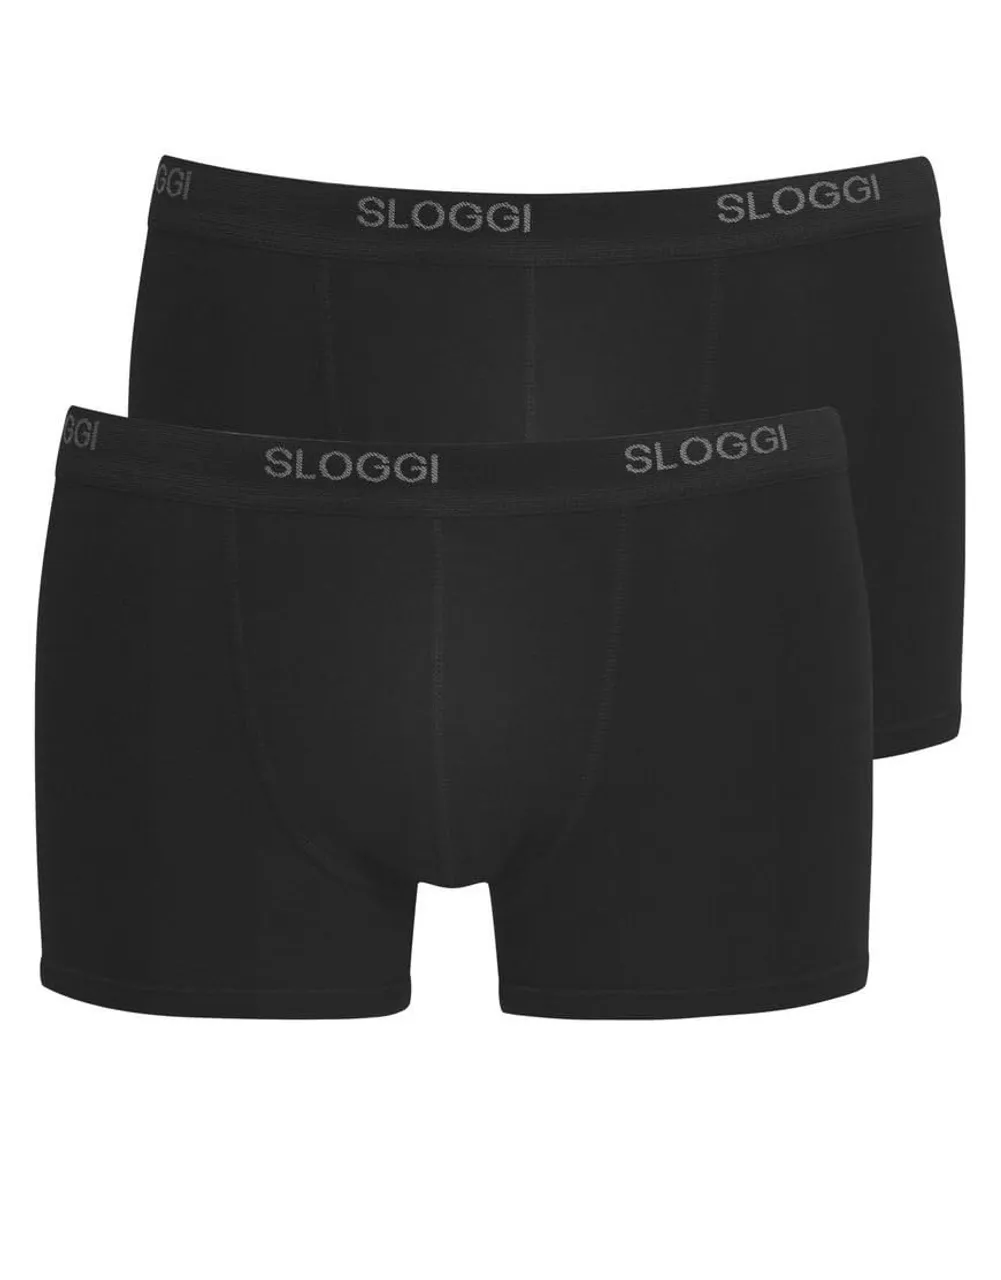 Sloggi Men's Basic Short 2 Pack Boxer Briefs